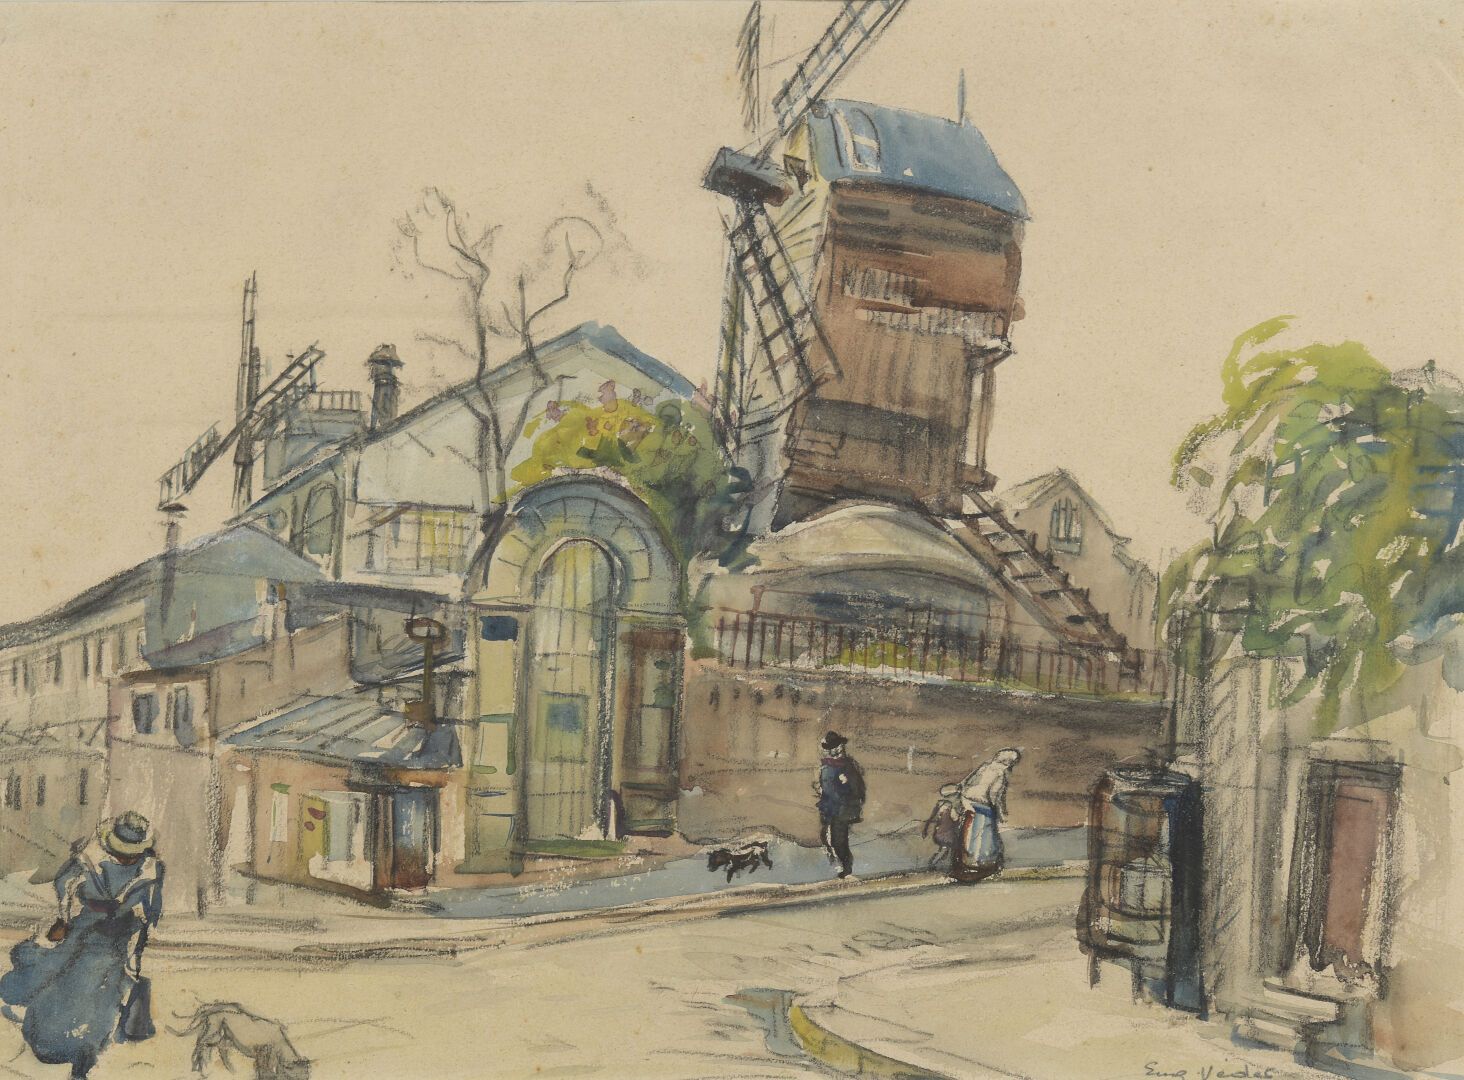 Null 欧仁-维德 (1876-1936)

加勒特的小木屋

纸上水彩和印度墨水。

右下方有签名。

37 x 27 cm